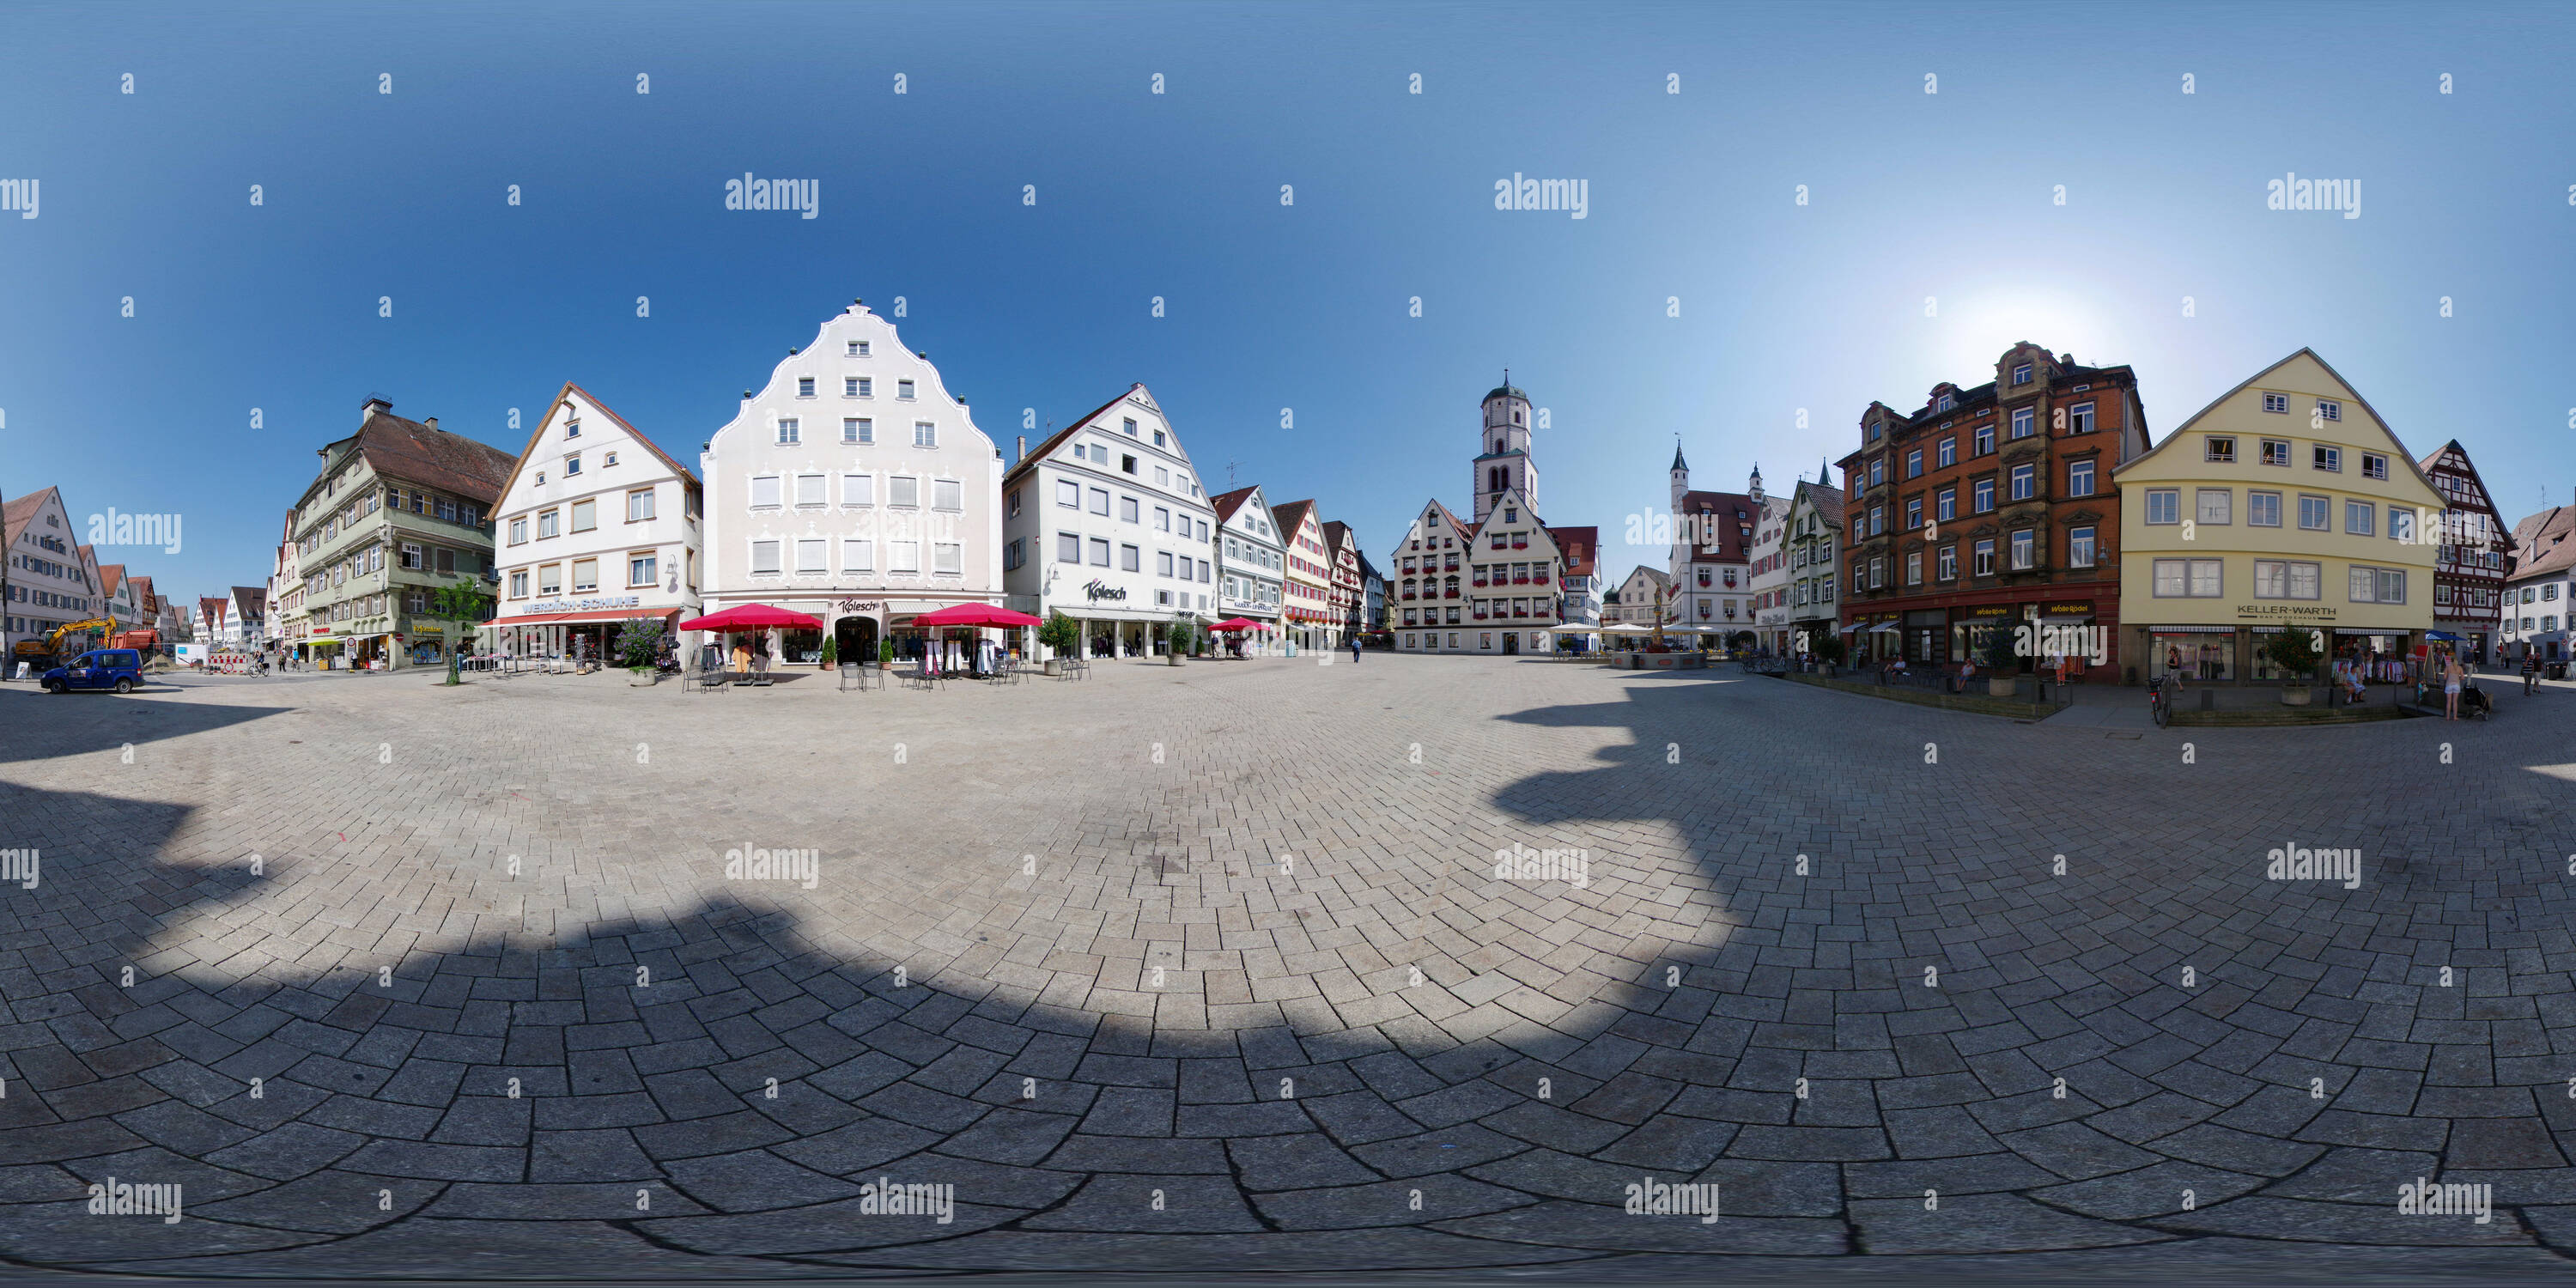 360 degree panoramic view of Marktplatz